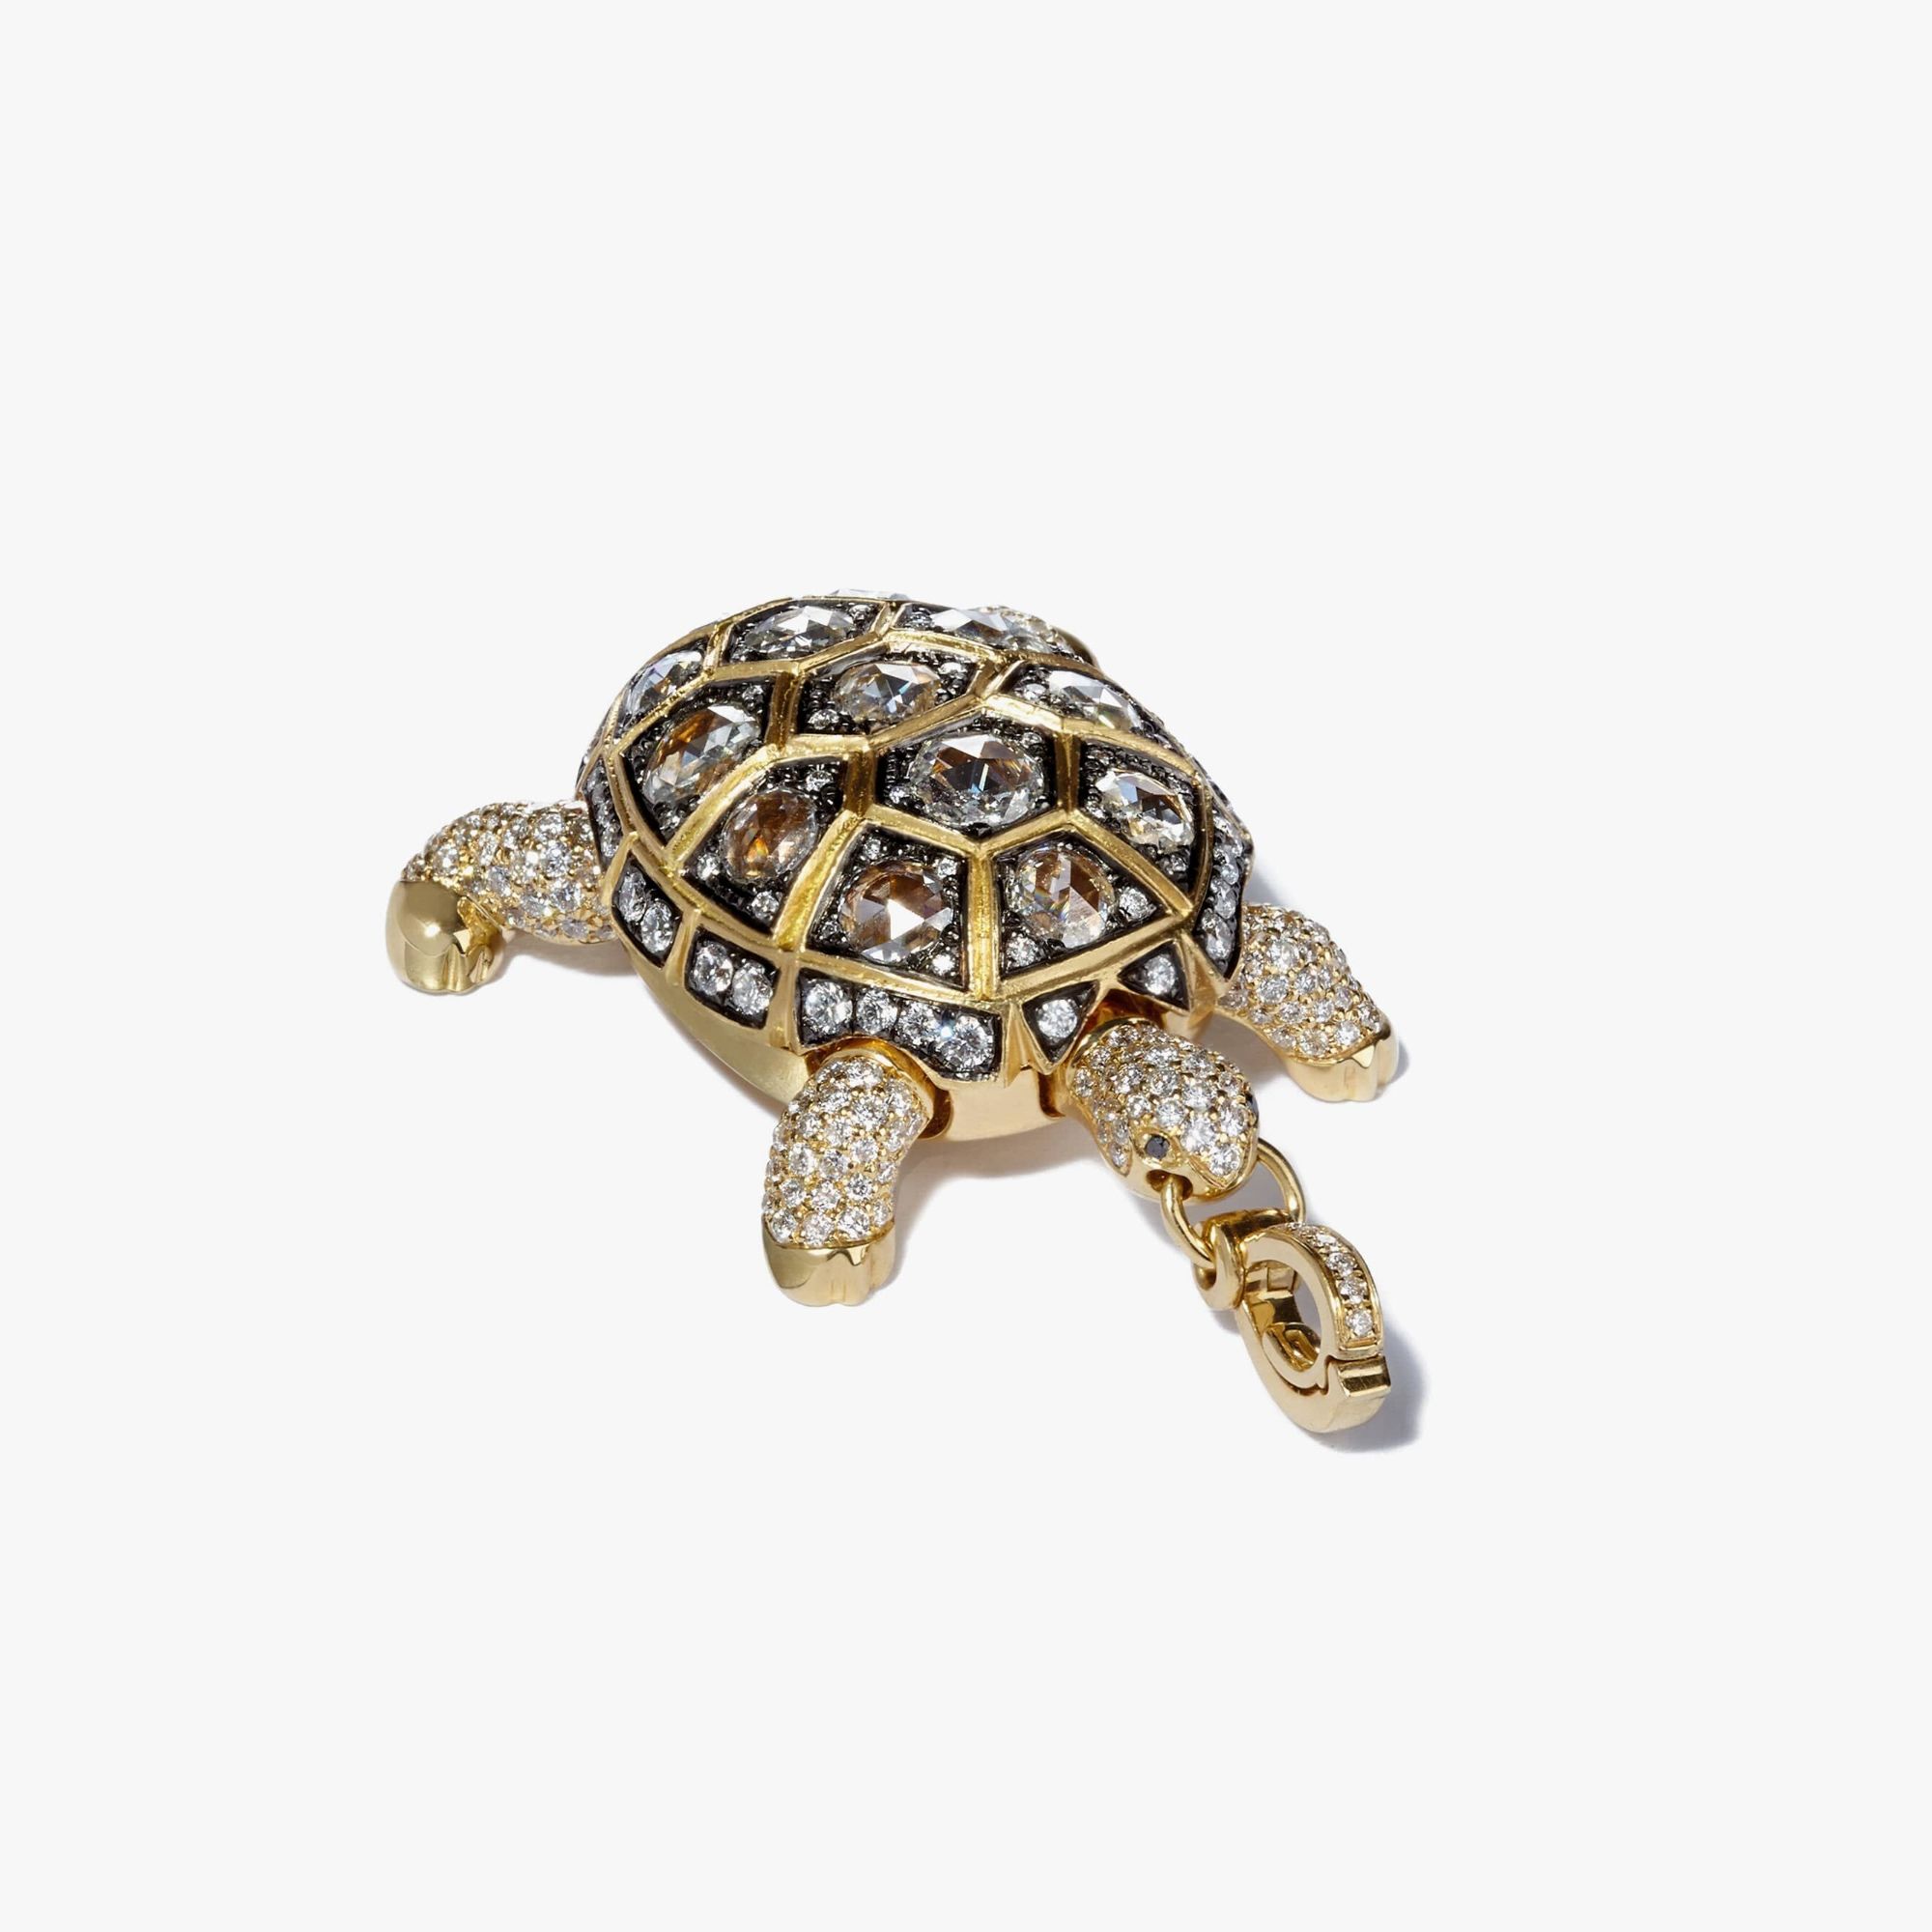 Mythology Baby Turtle Pendant